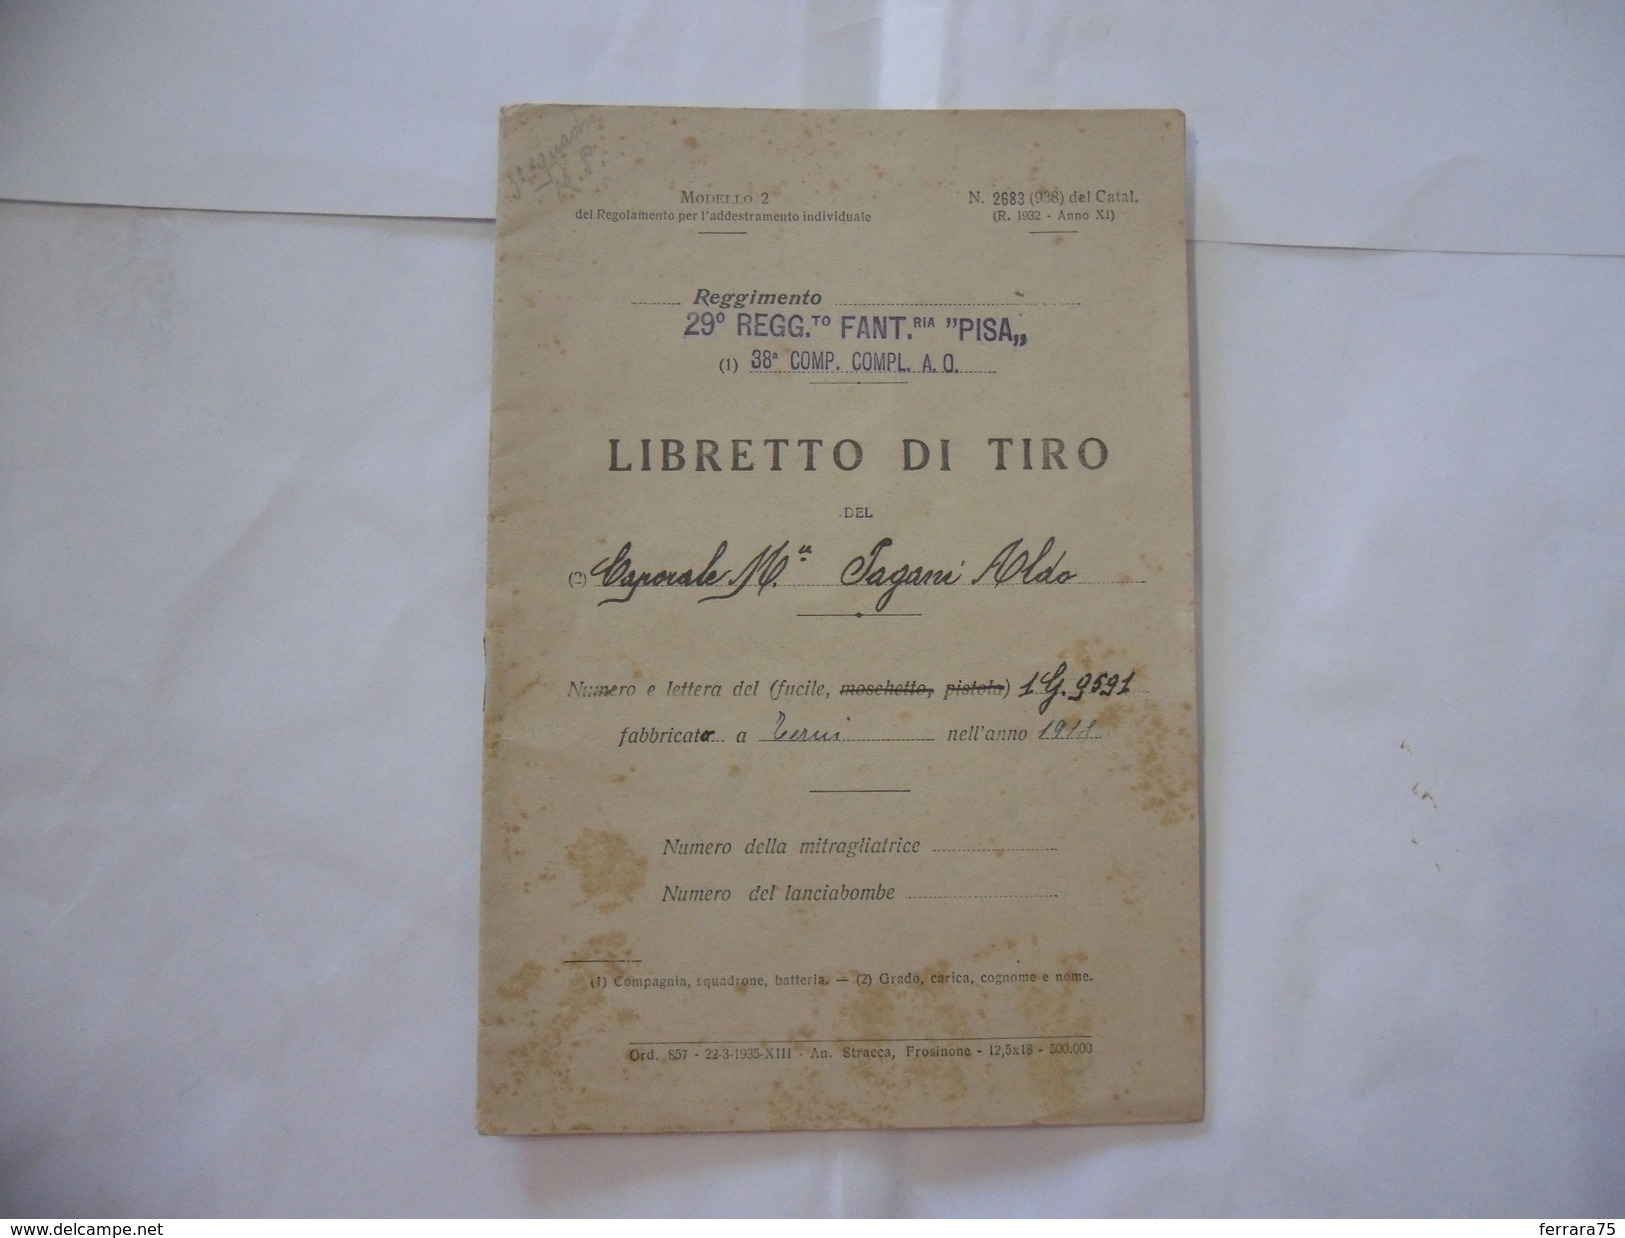 WW2 LIBRETTO DI TIRO 29°REGGIMENTO FANTERIA PISA FRONTE DEL PIAVE A.O. 1936. - Italien